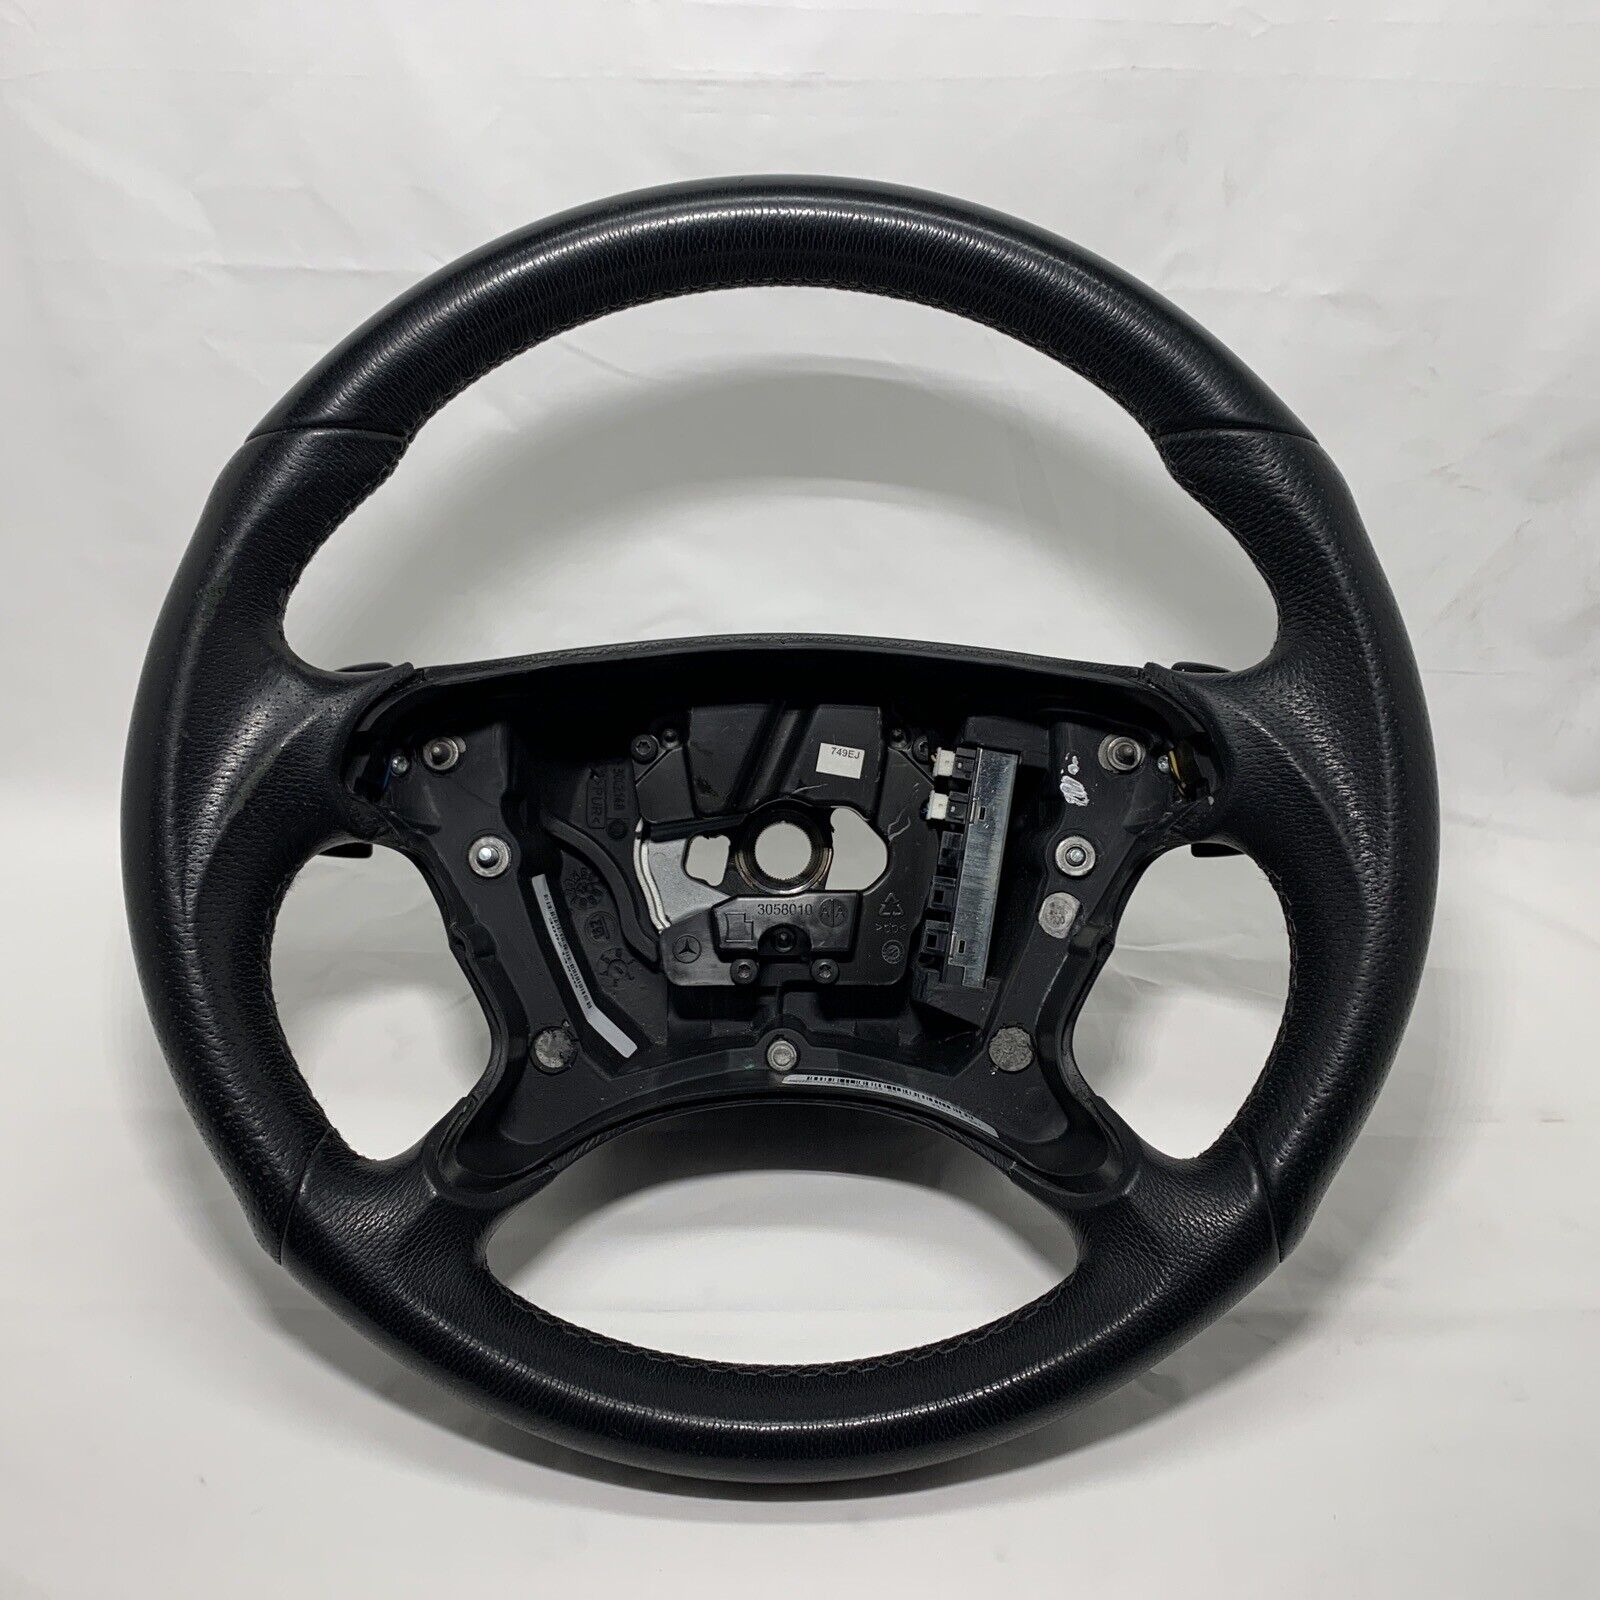 06-11 Mercedes W209 CLK350 CLK550 AMG Sport Steering Wheel w/Paddle Shifters OEM